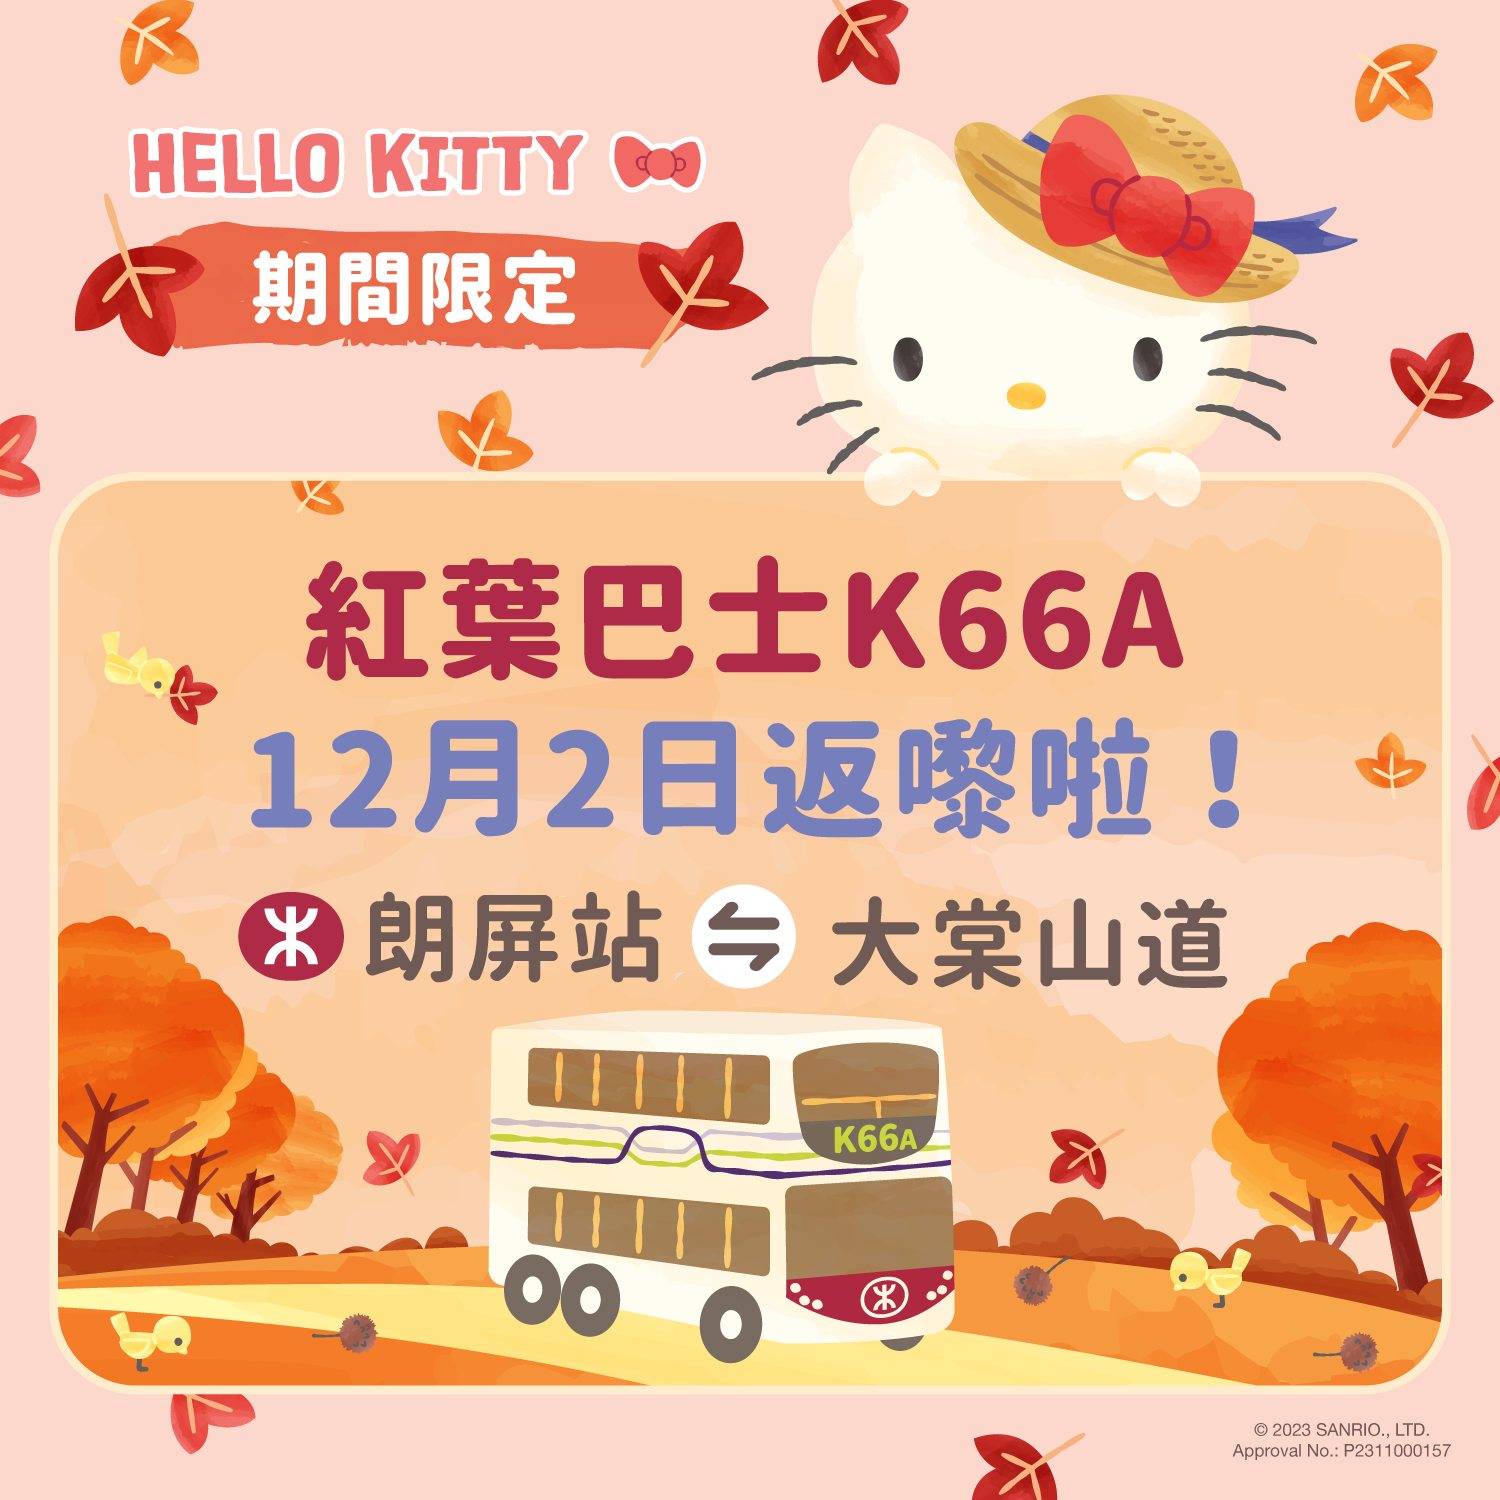  荃灣米線 香港紅葉 紅葉情報 大棠紅葉 今年的紅葉巴士K66A與Hello Kitty合作。